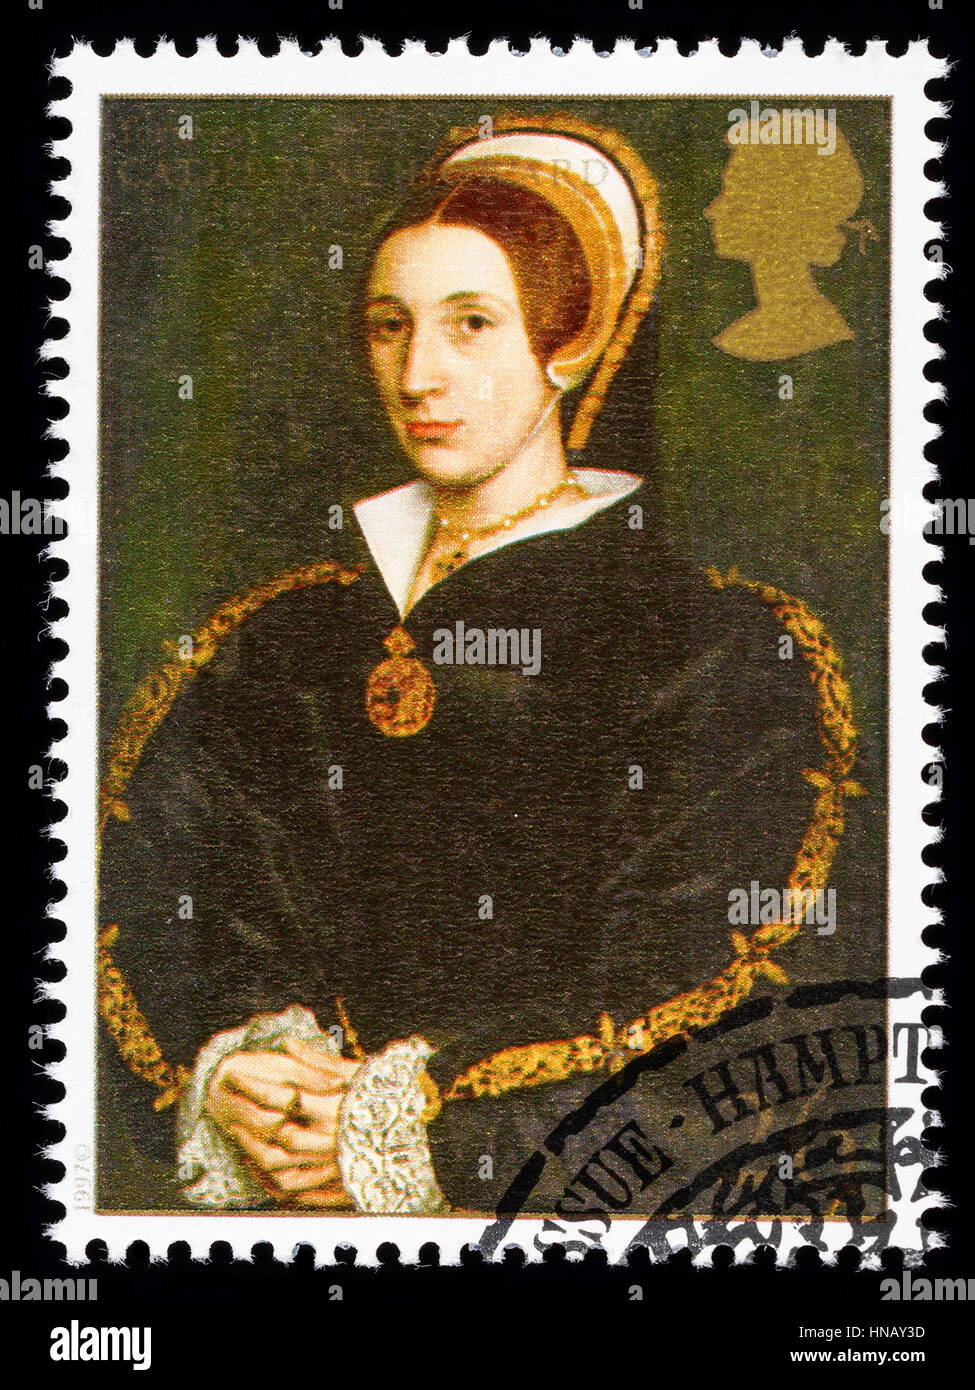 Regno Unito - circa 1997: usato francobollo stampato in Gran Bretagna per commemorare il Re Enrico VIII mostra Catherine Howard una delle sue numerose mogli Foto Stock